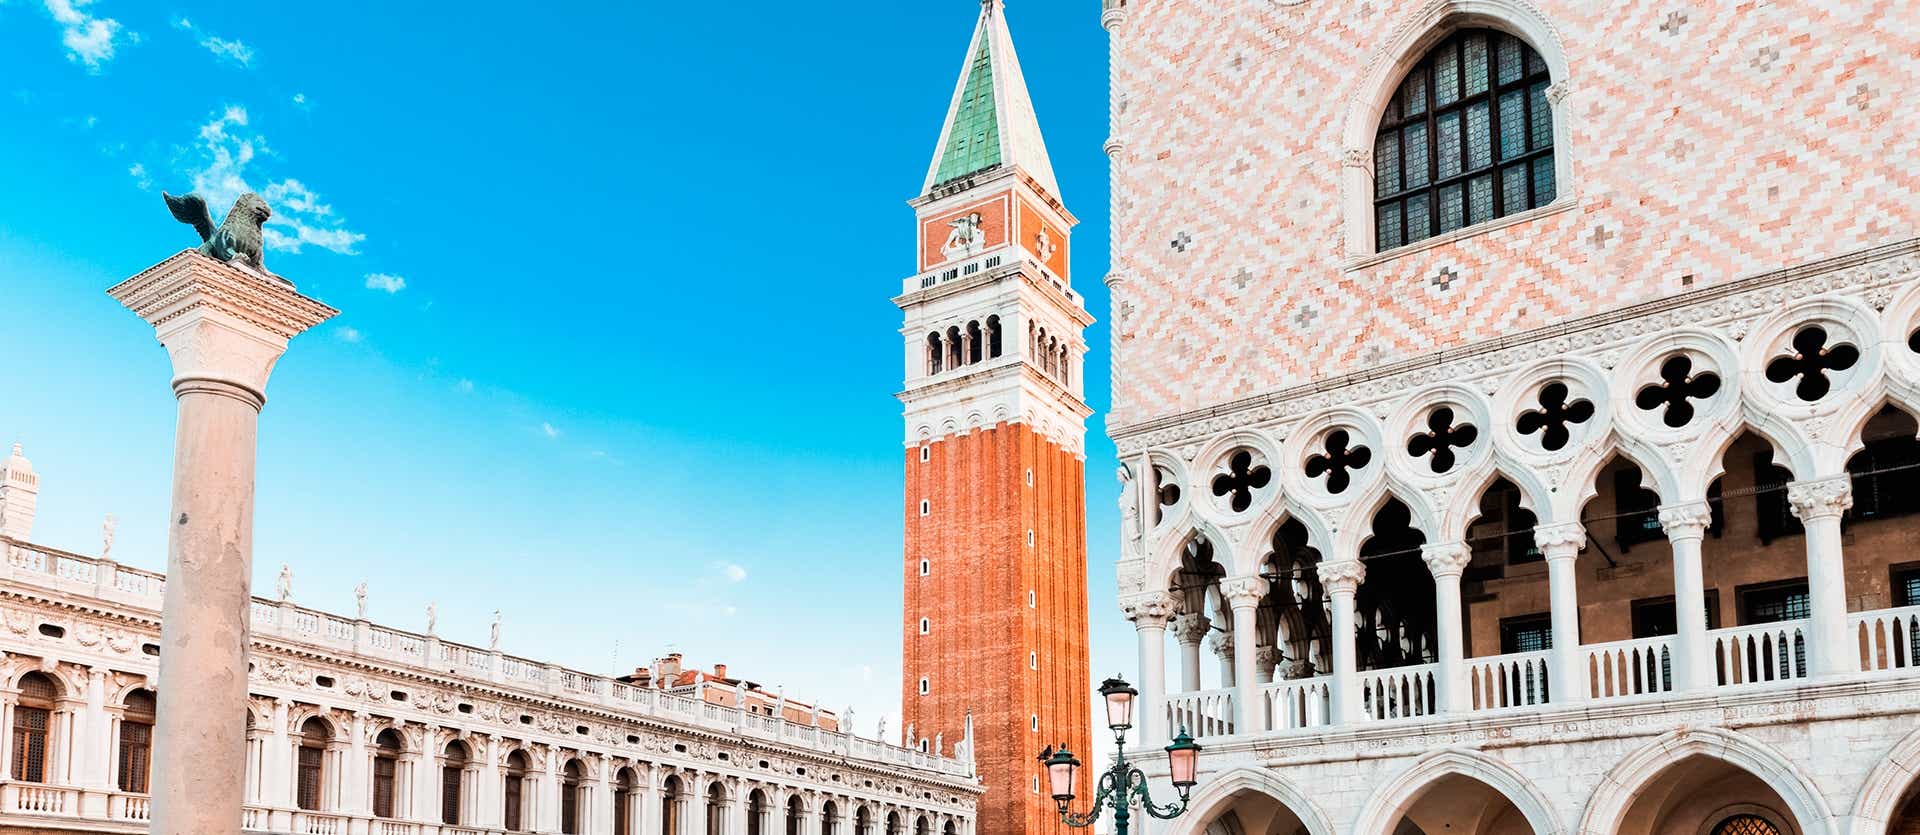 San Marco Square <span class="iconos separador"></span> Venice